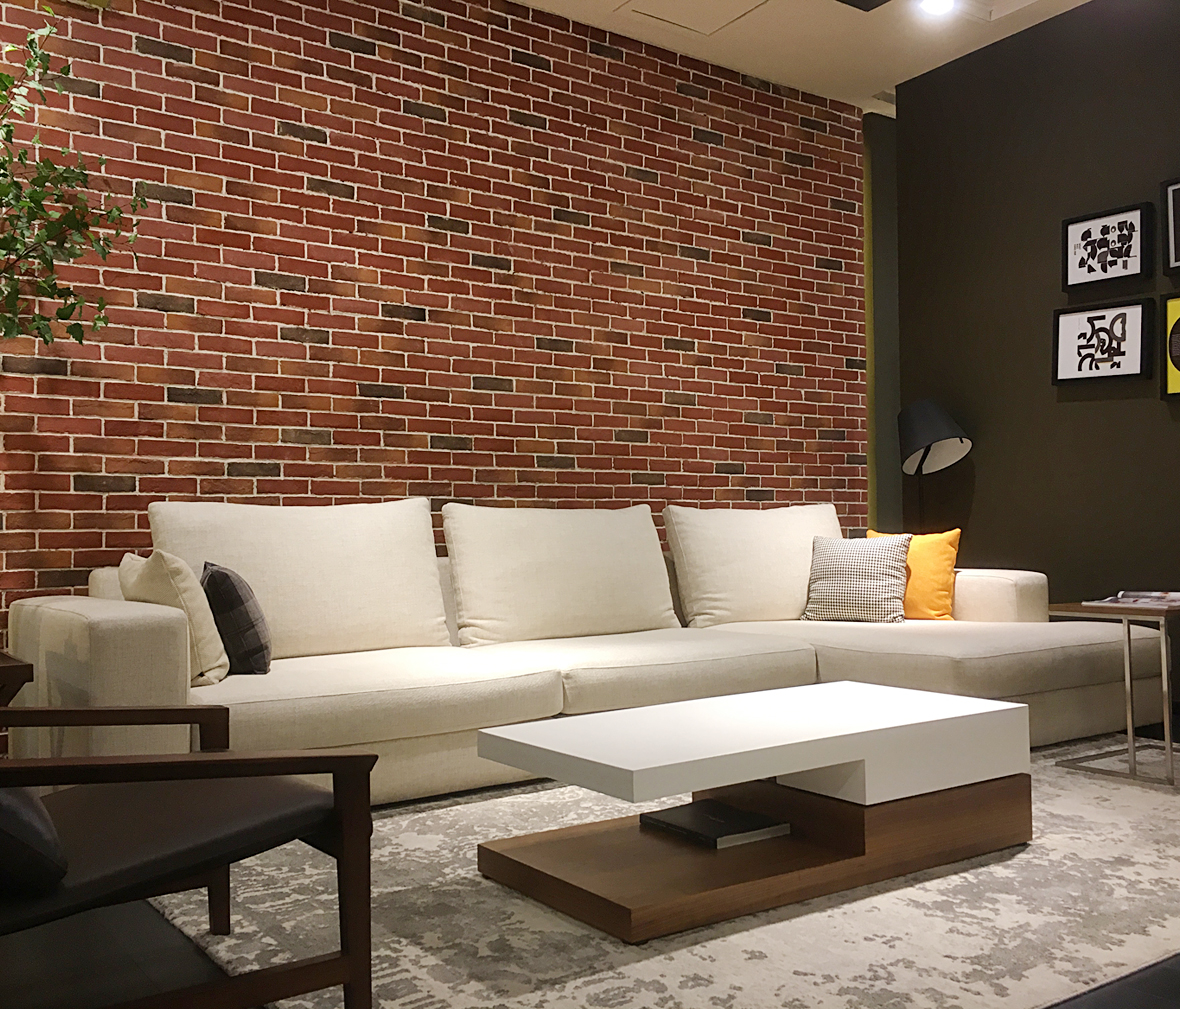 尚景家具 sf89型号沙发 板木结合材质北欧简约风格